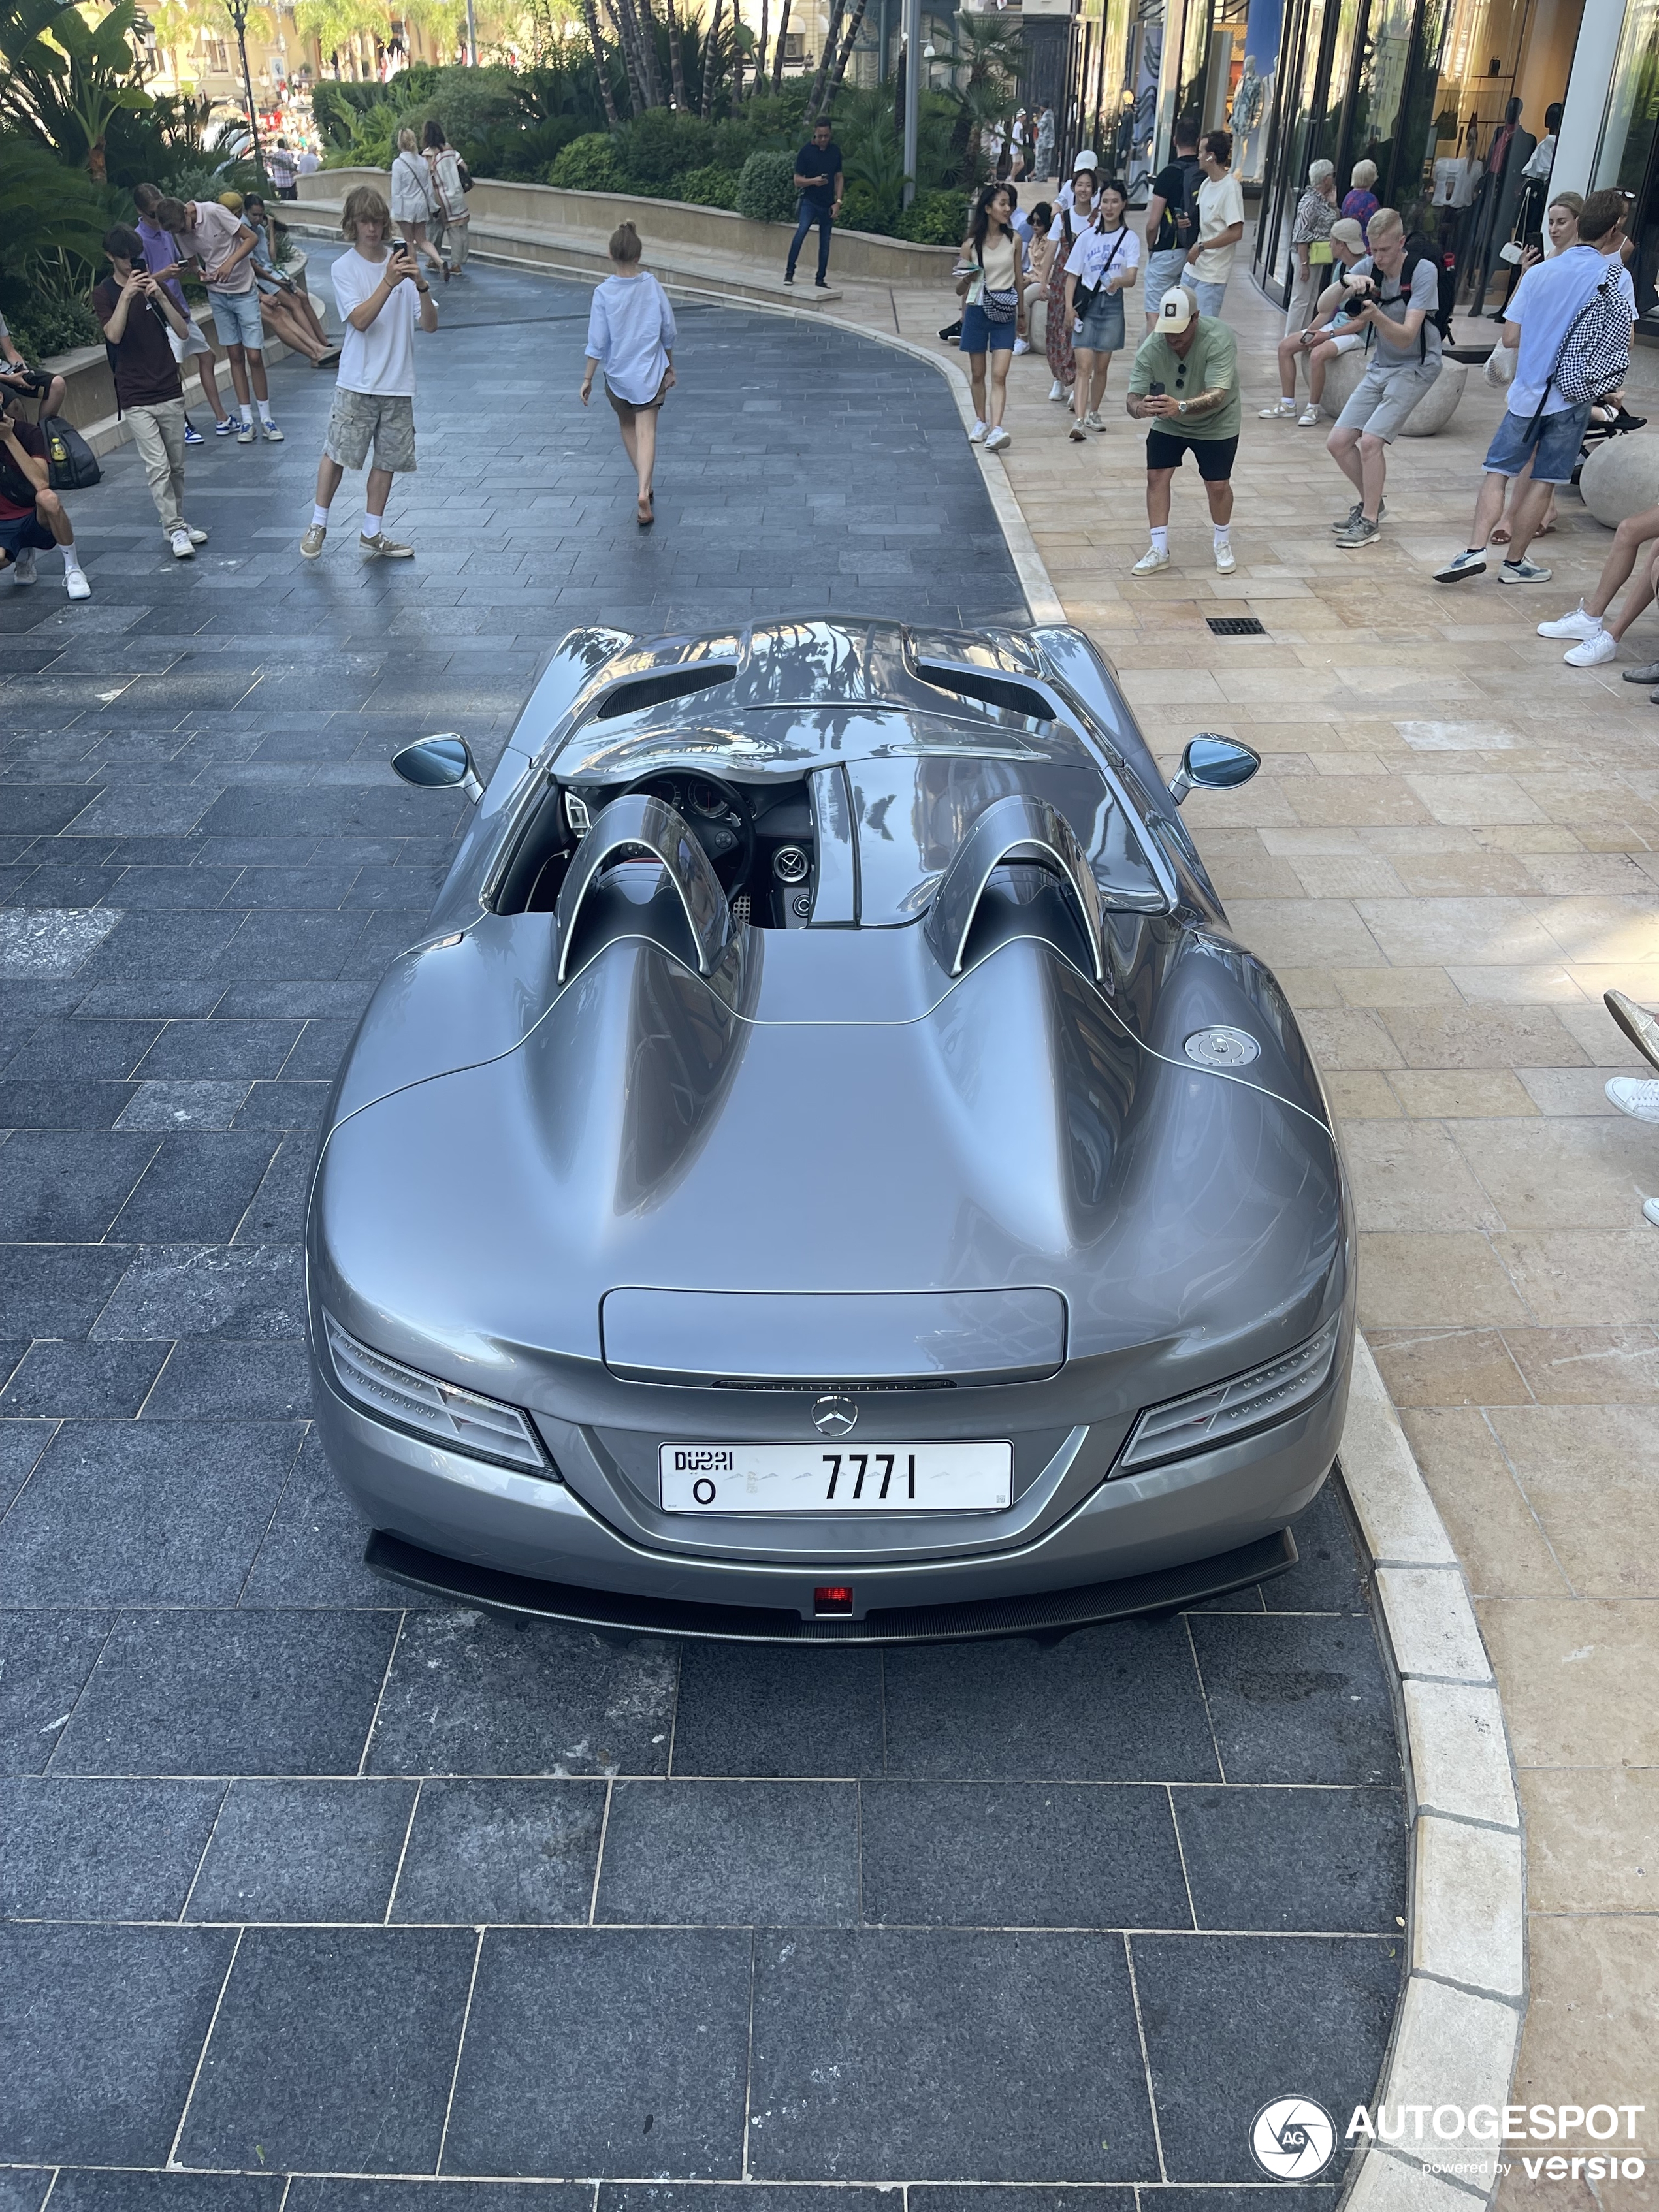 Još jedno remek-delo je parkirano u Monaku